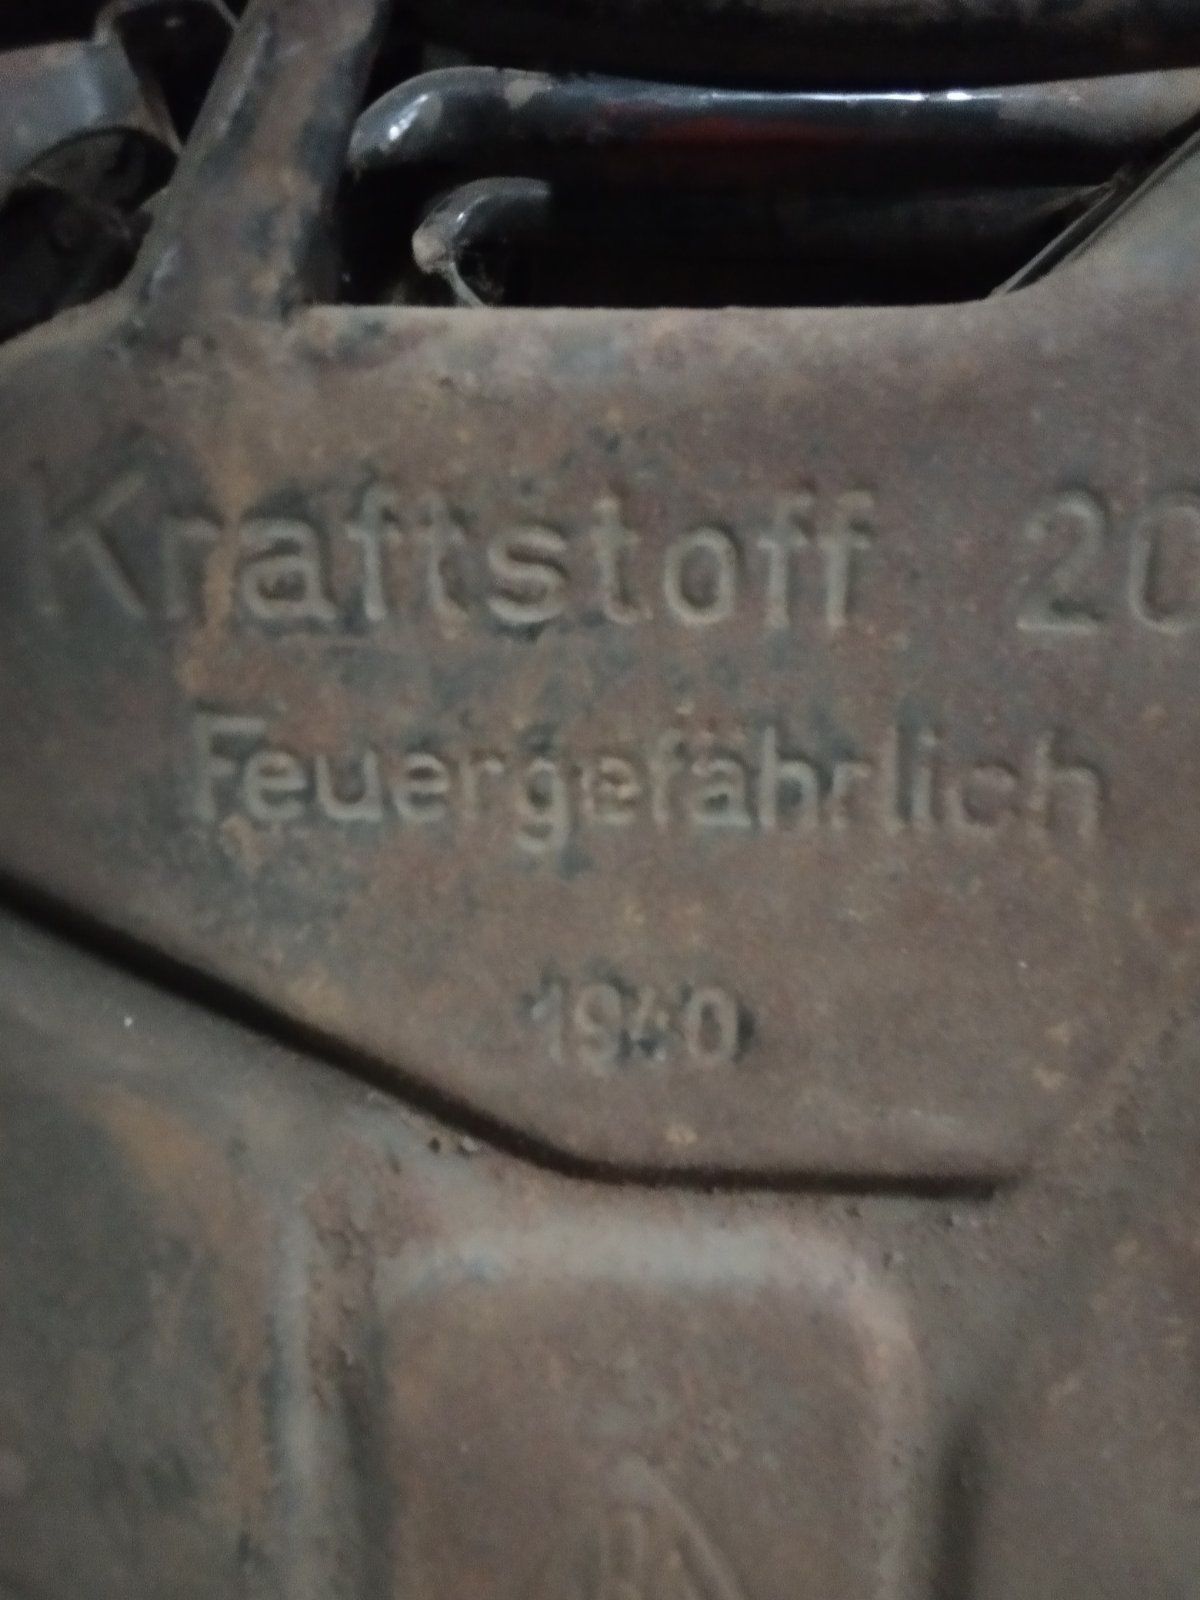 канистра с под топлива Германия 1940г.